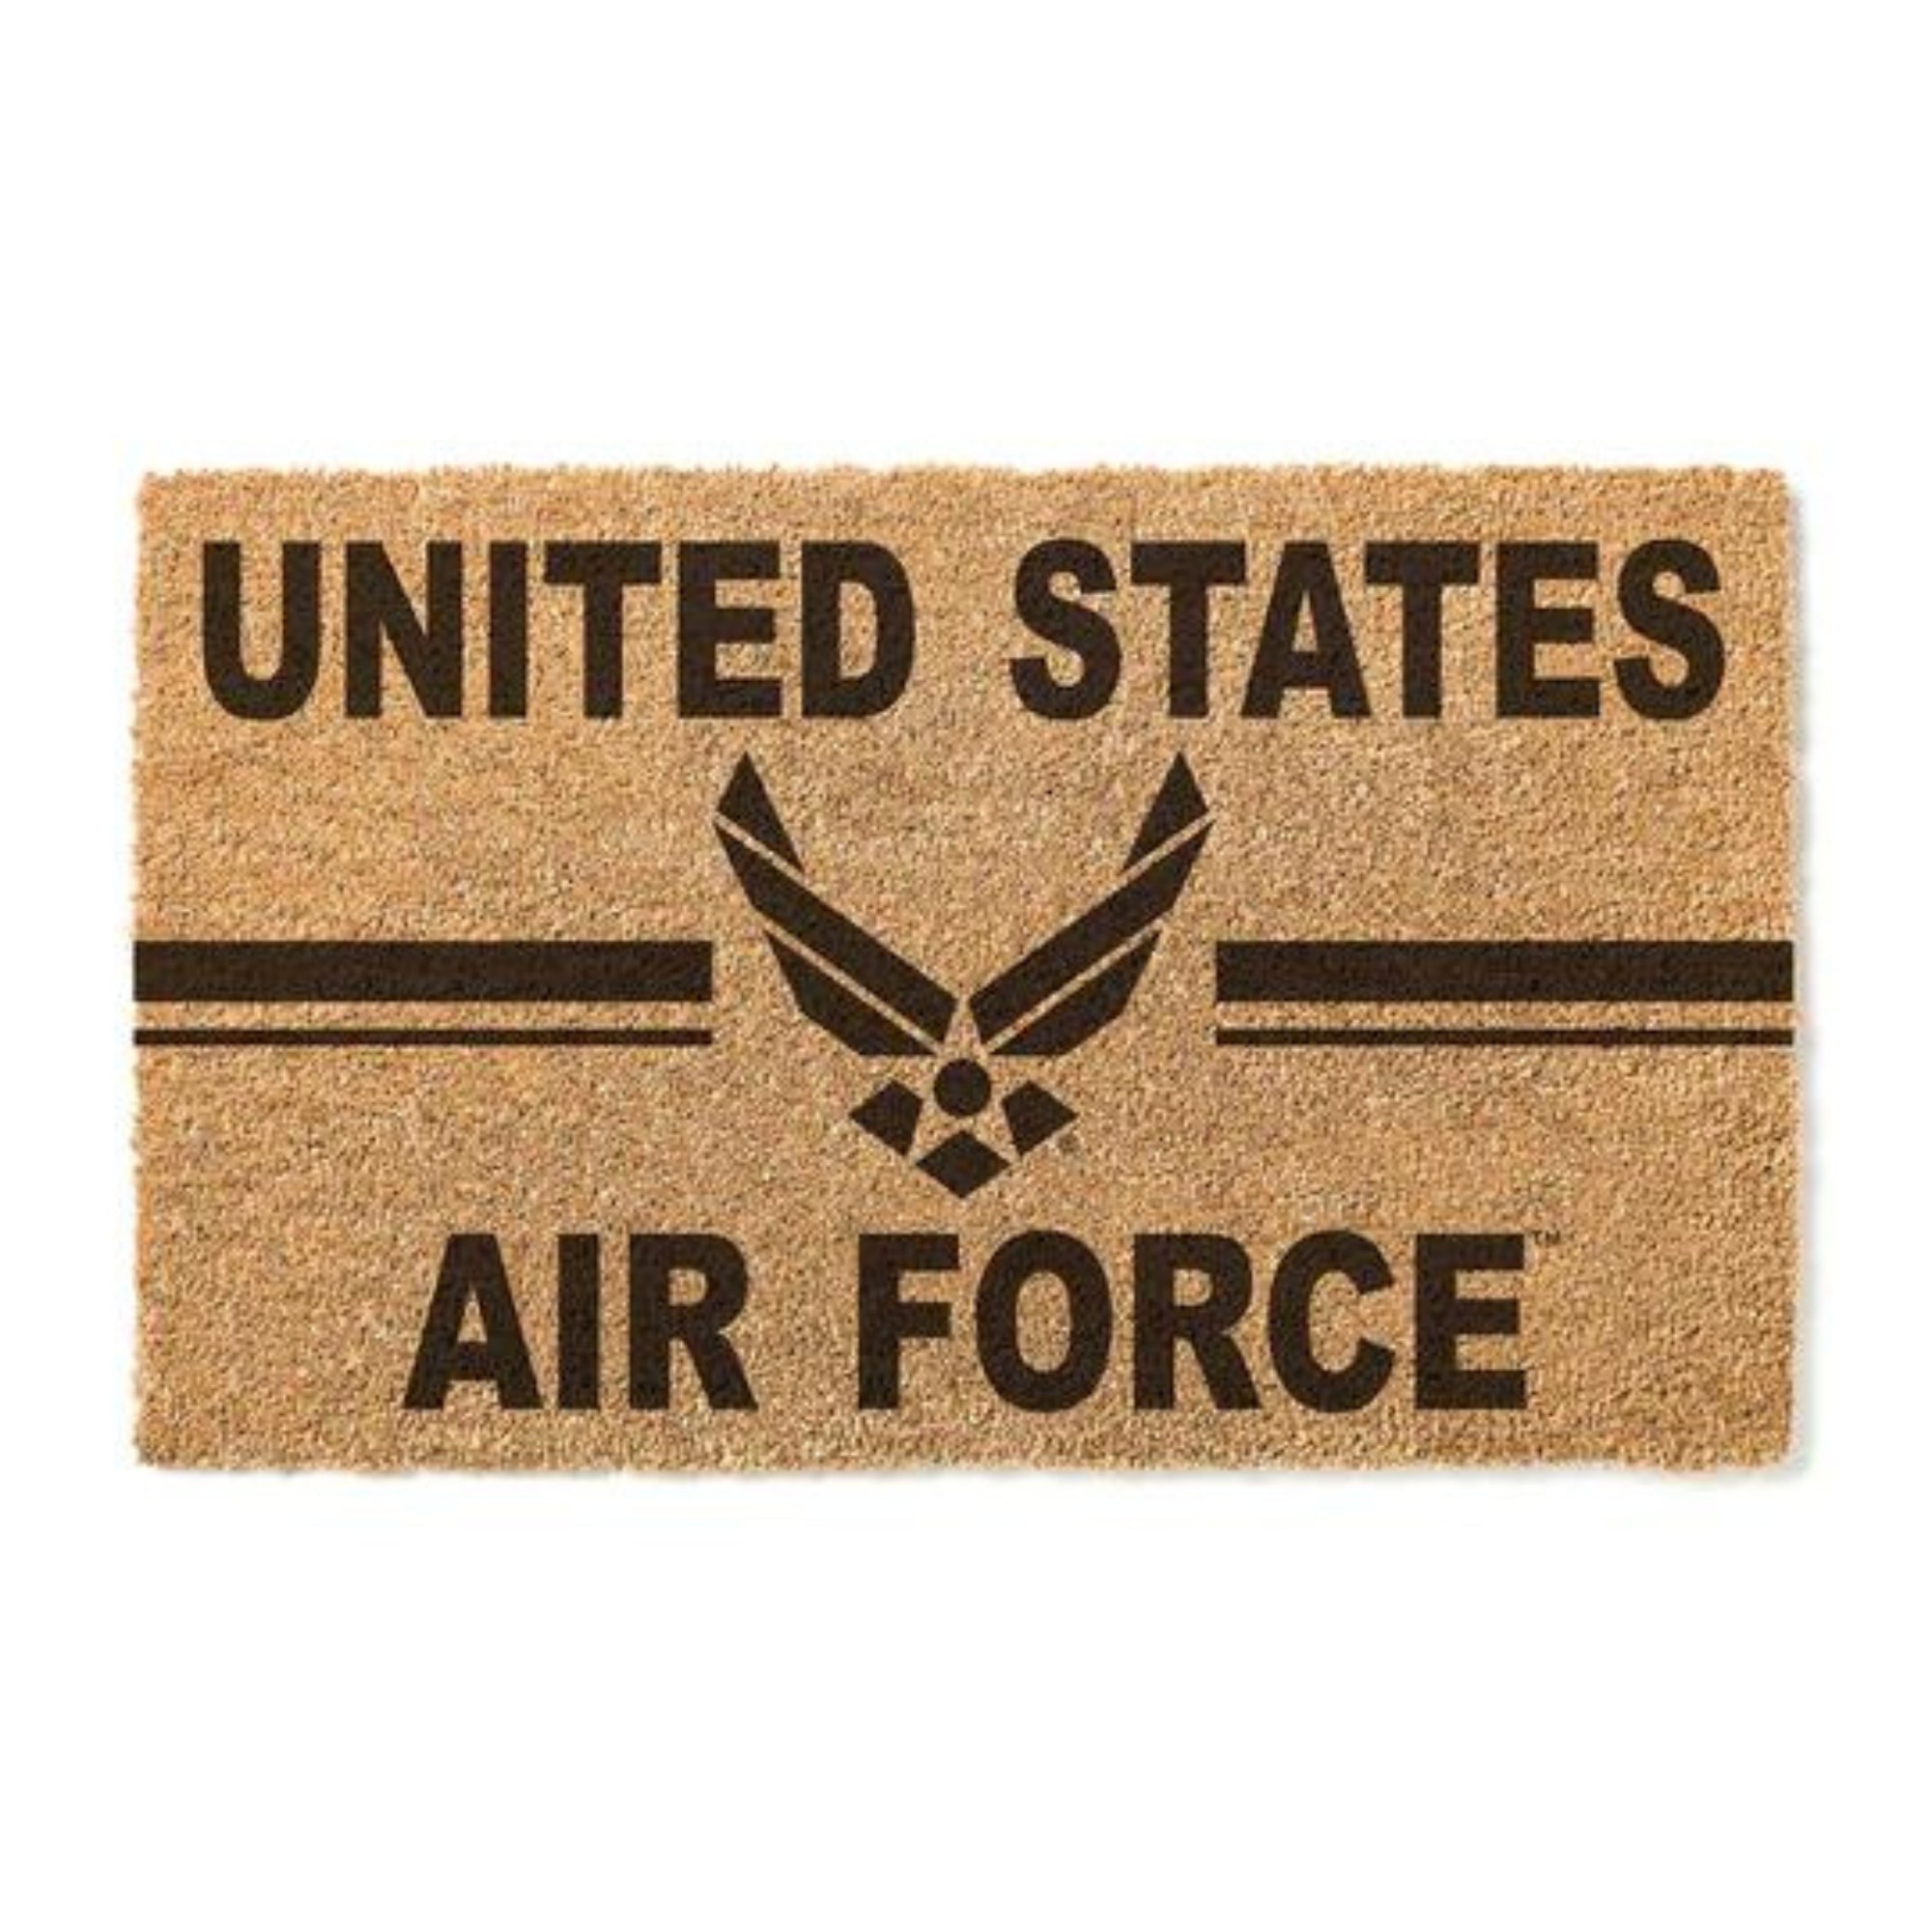 Air Force Wings Stripe Doormat